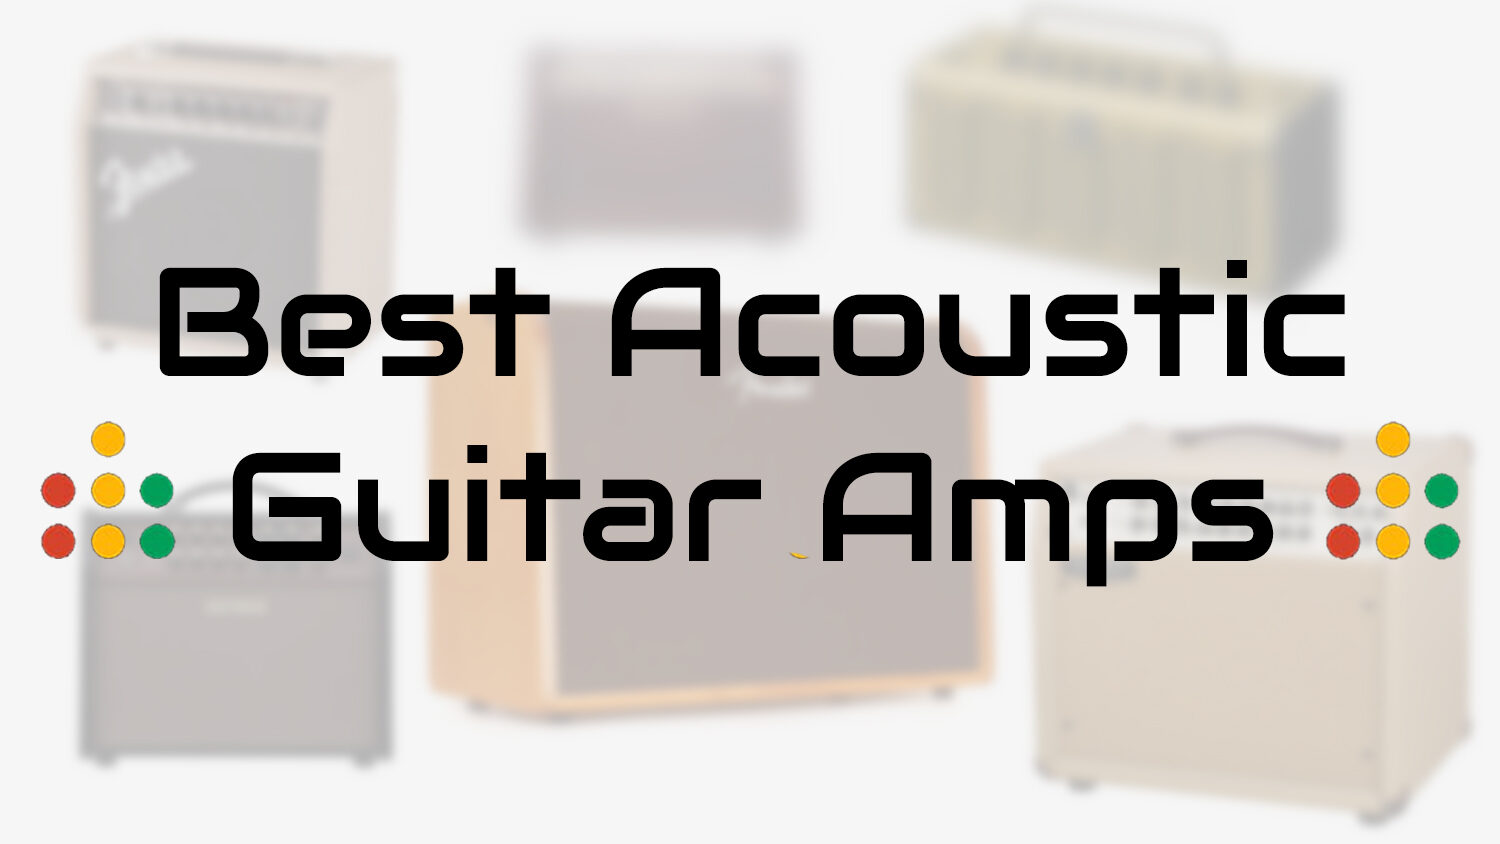 best acoustic guitar amps